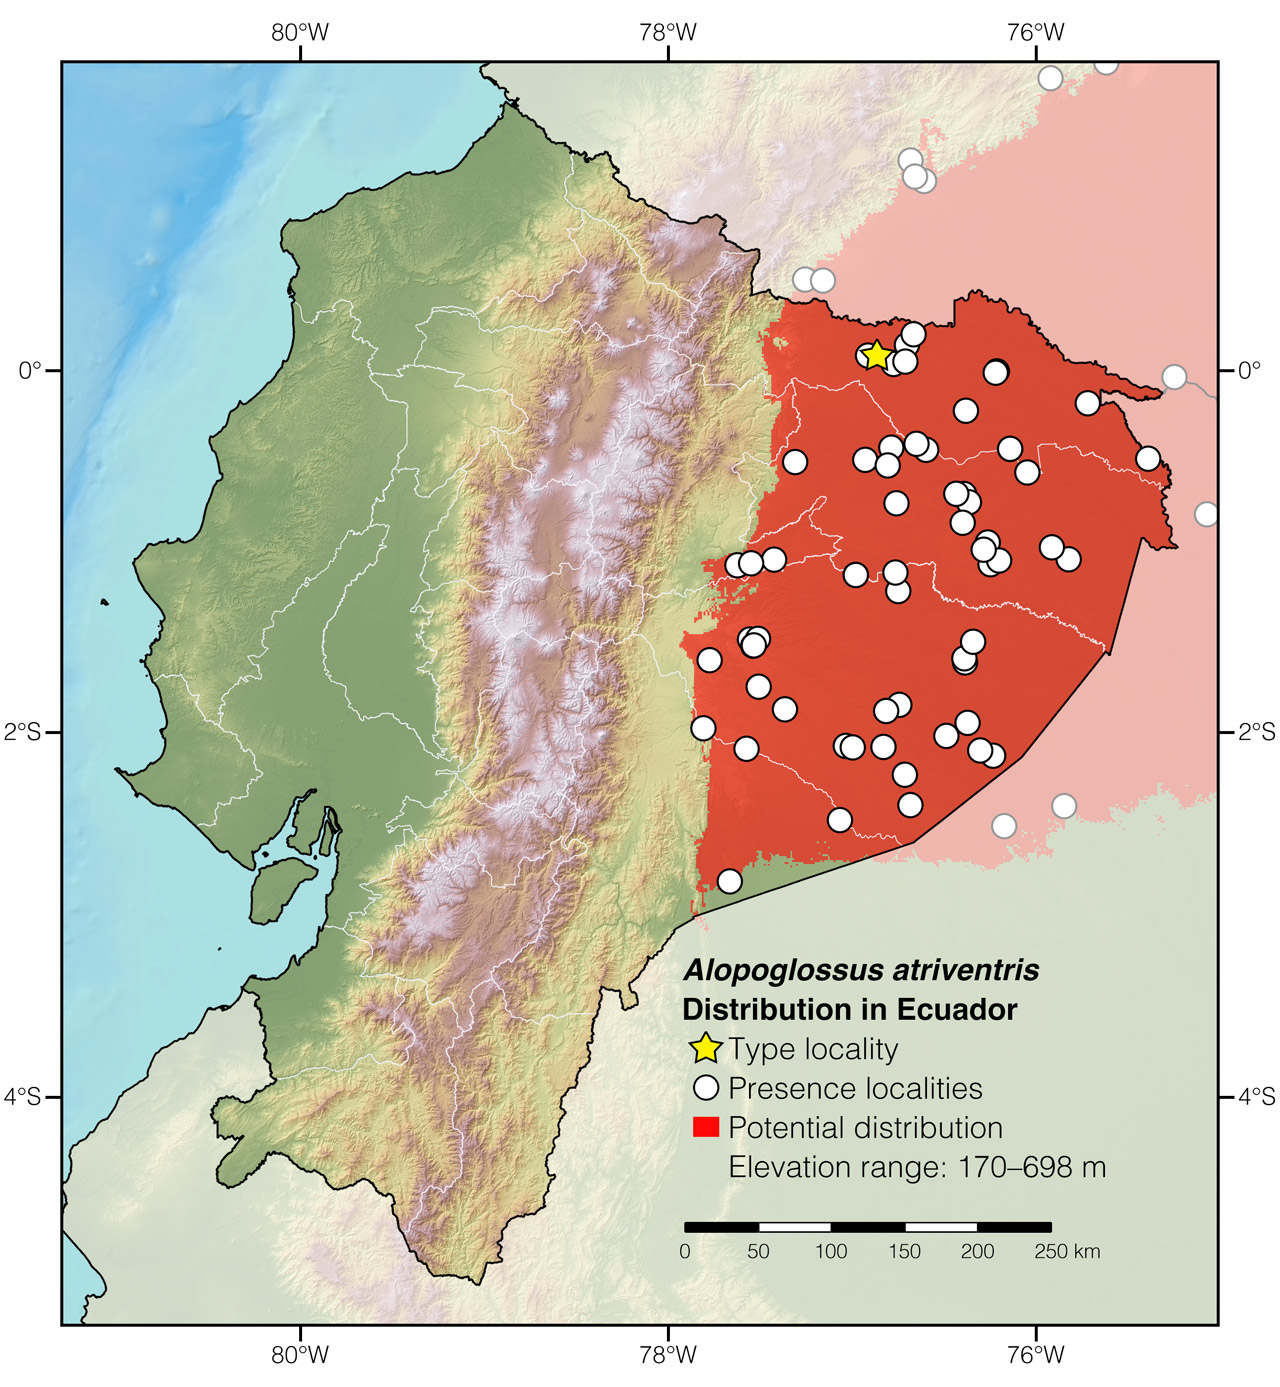 Distribution of Alopoglossus atriventris in Ecuador